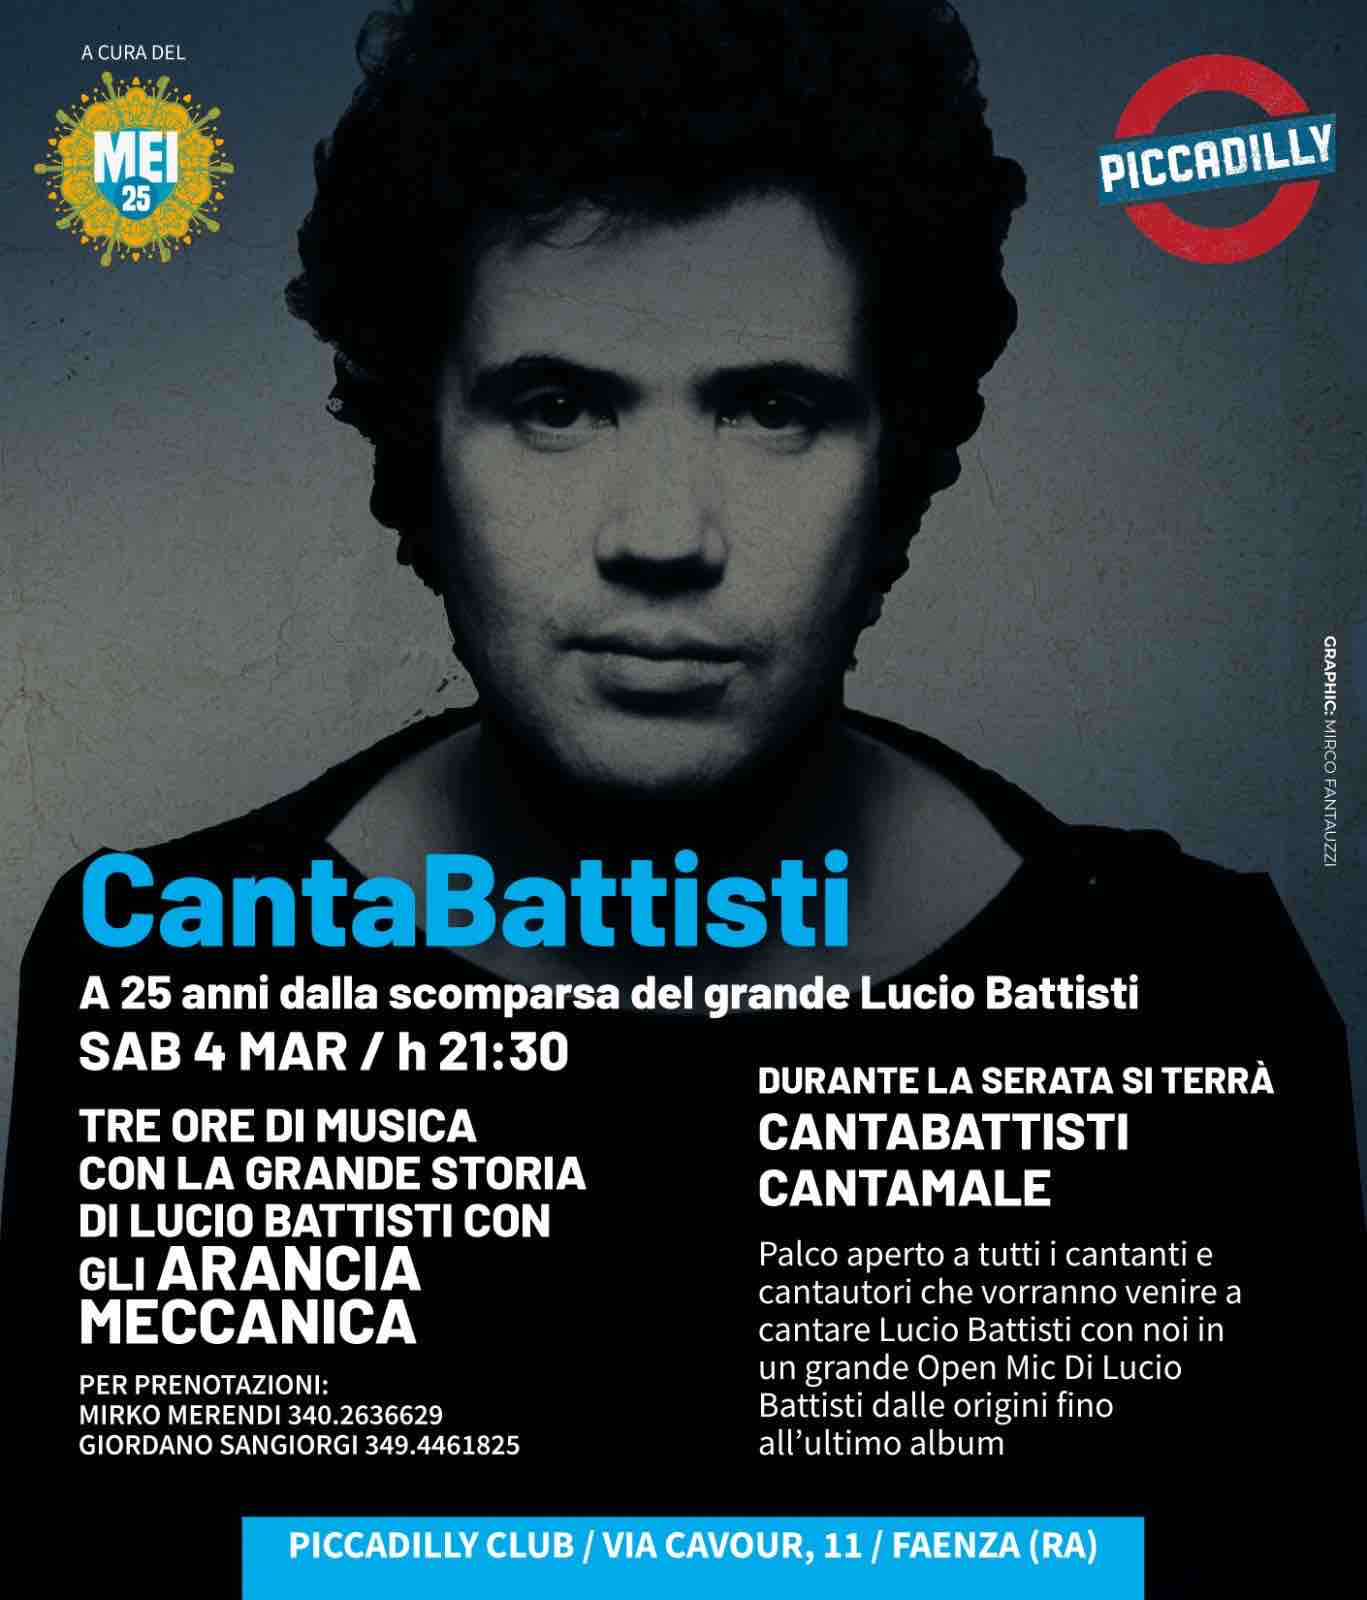 Sabato 4 marzo arriva al Piccadilly di Faenza il CantaBattisti con gli Arancia Meccanica, tre ore di tutto Battisti anche con il CantaBattisti CantaMale con tanti cantanti e vocalist e cantautori che potranno partecipare con Open Mic